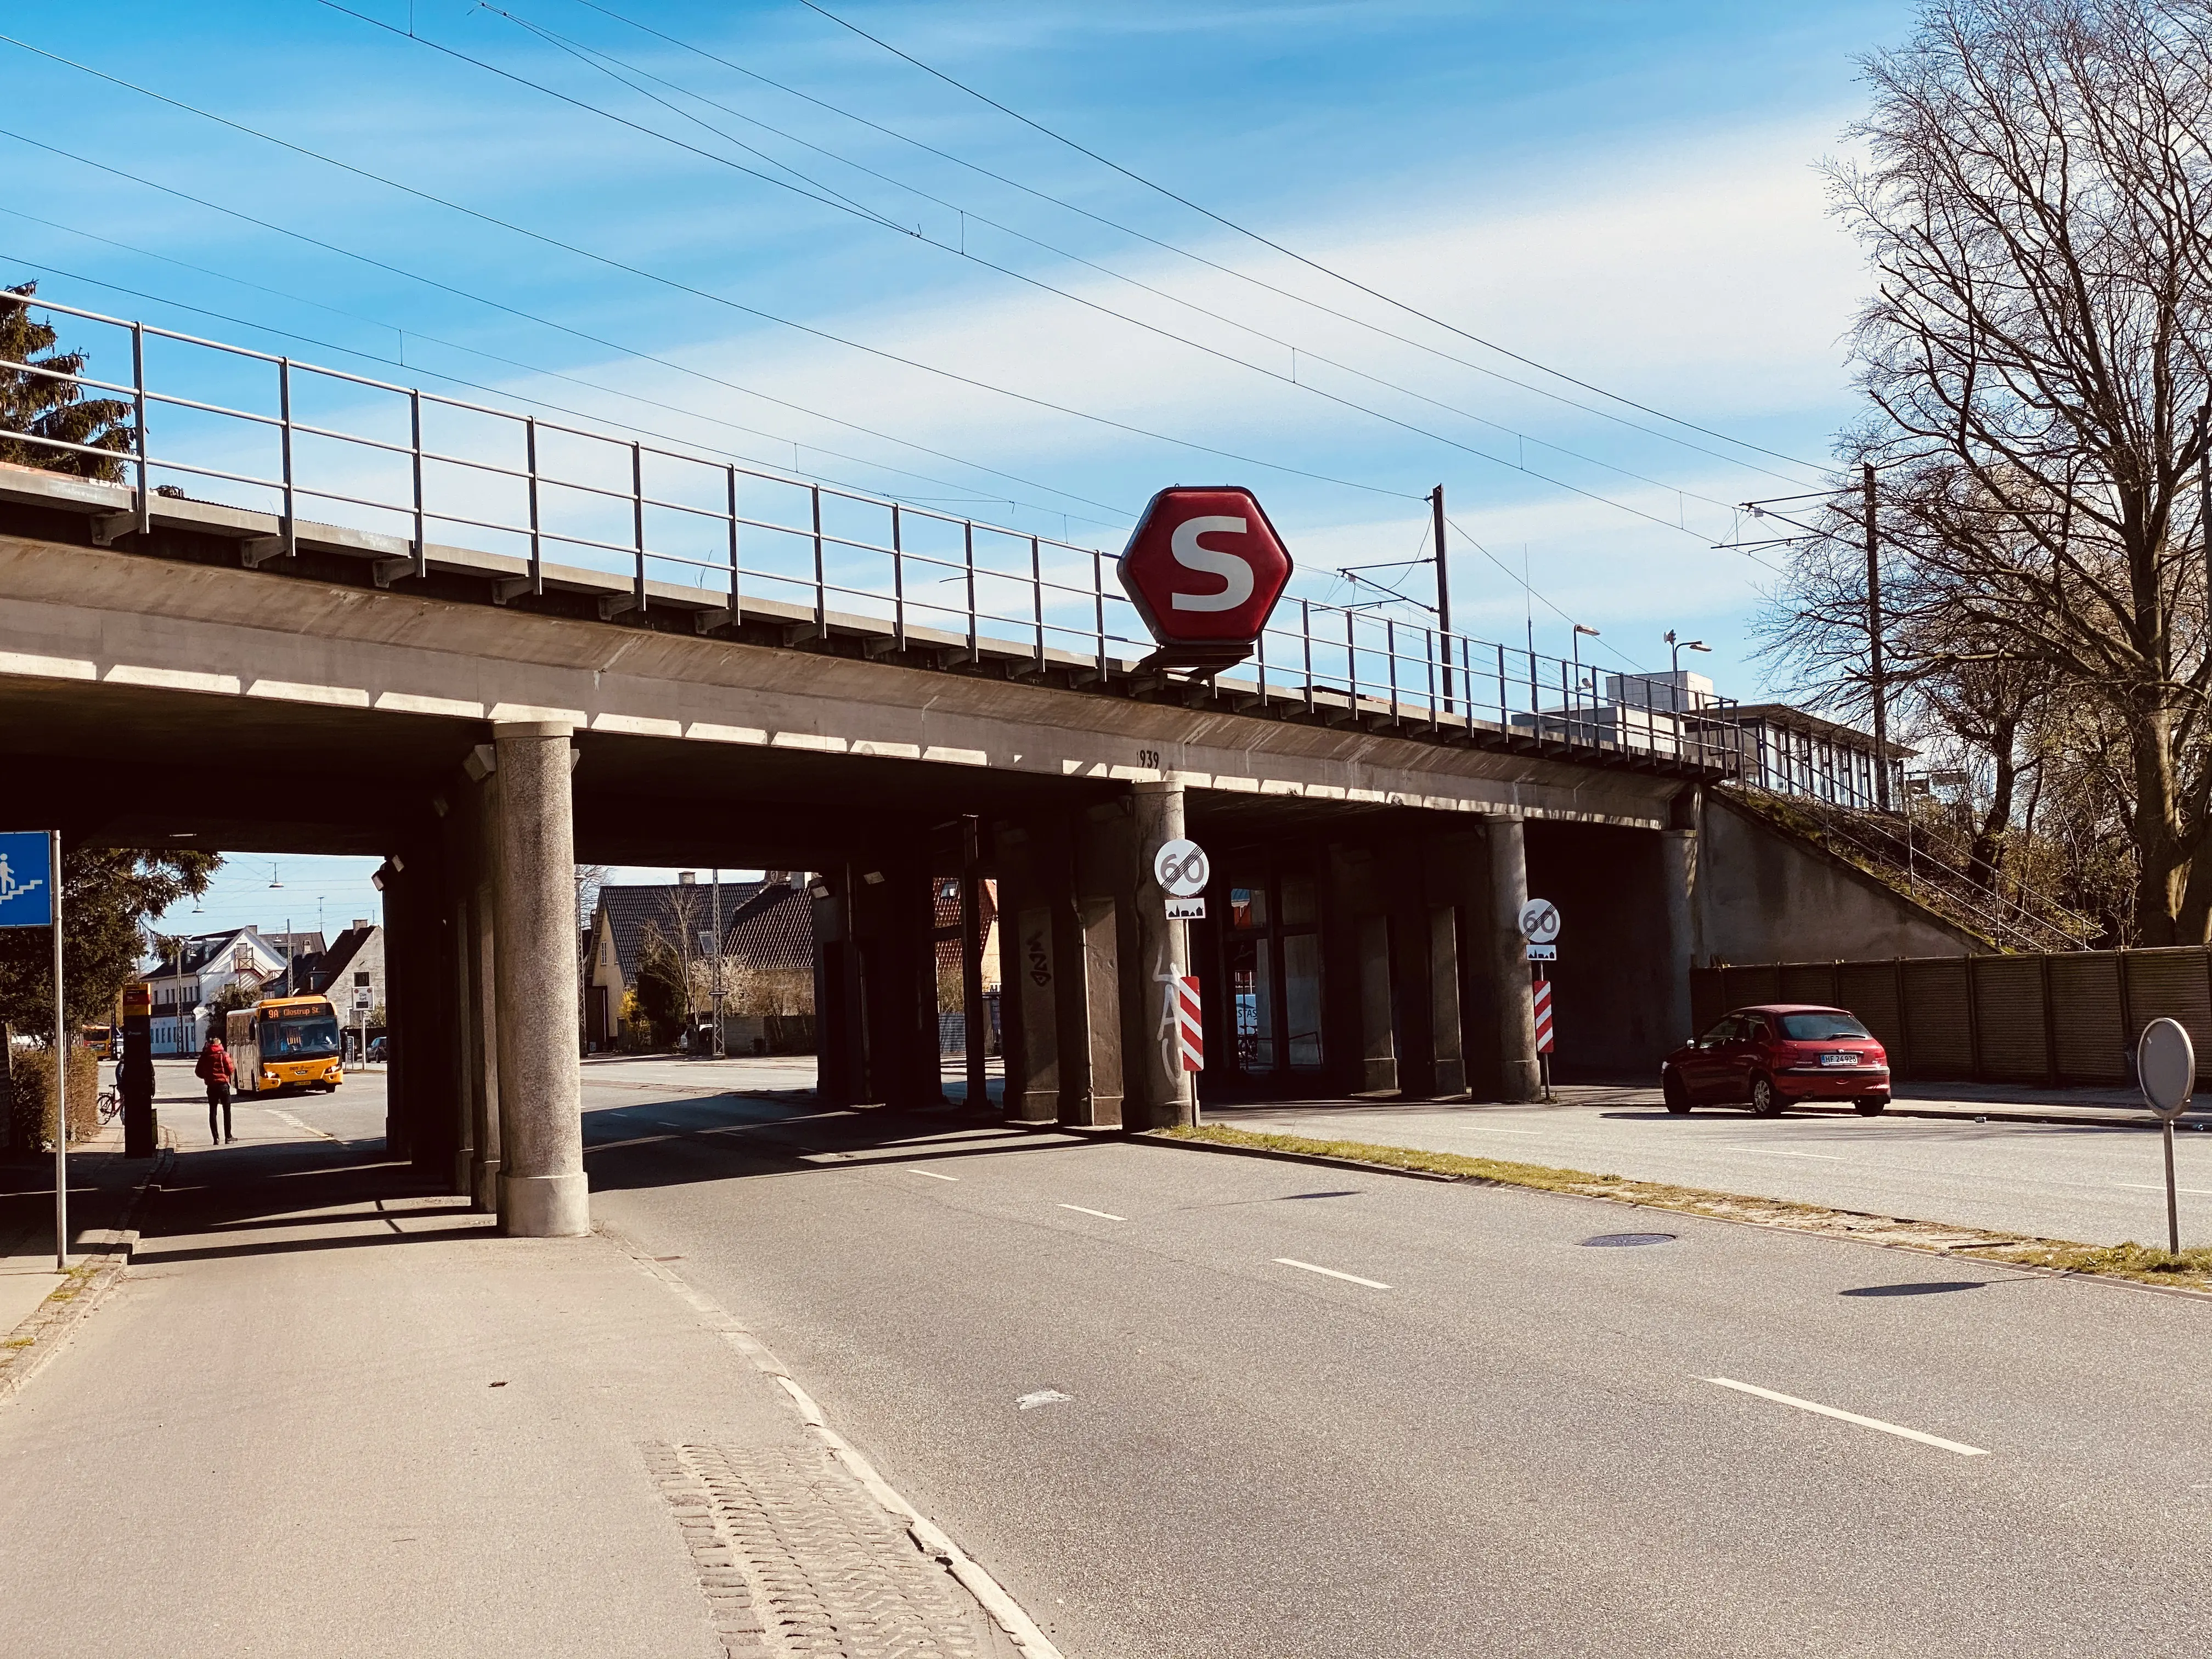 Jyllingevej S-togsstation.